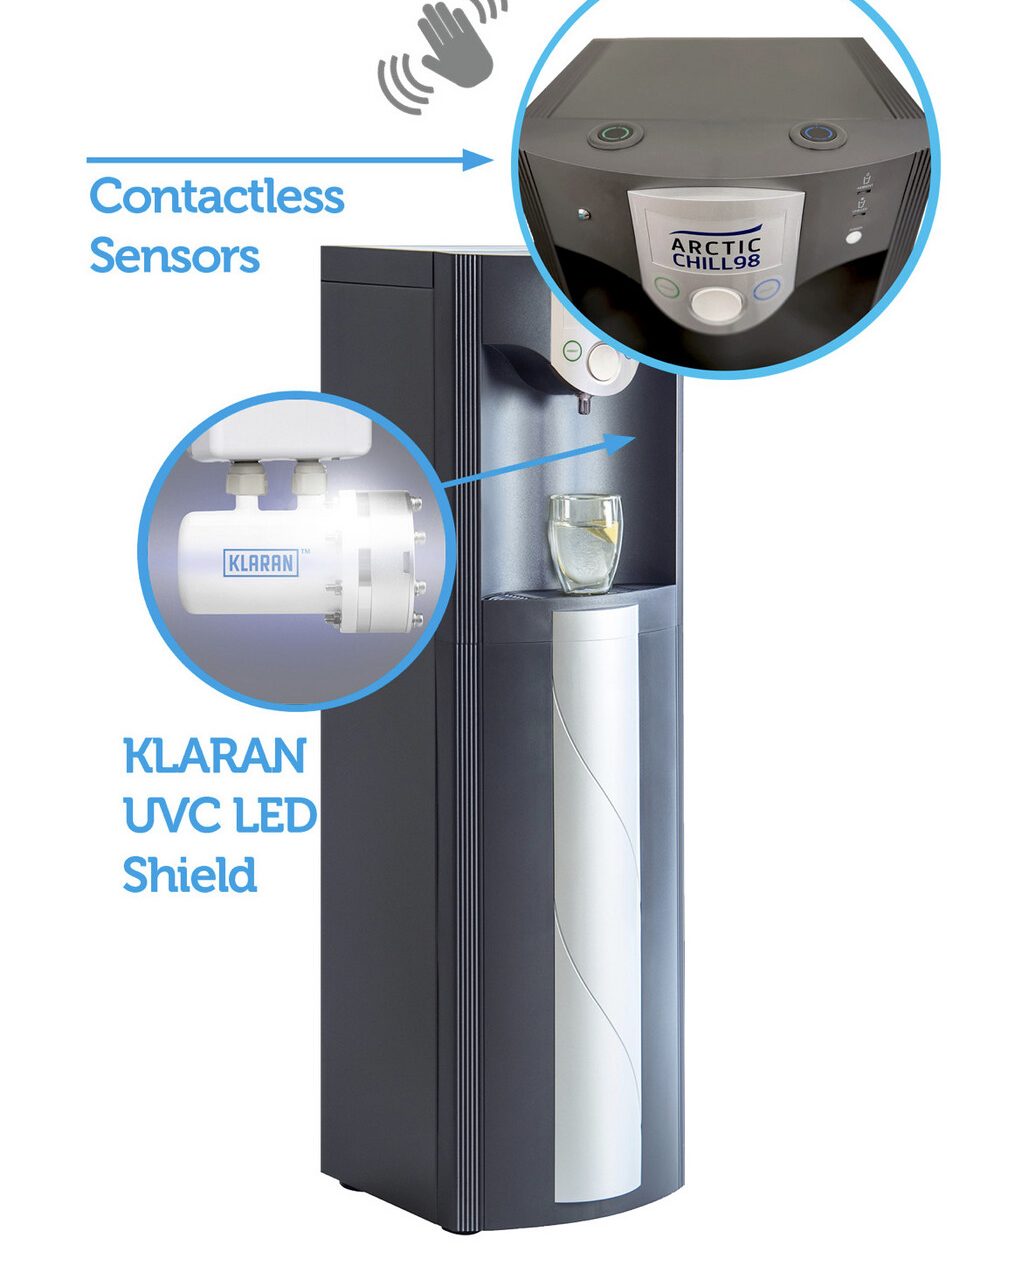 Klaran UVC LED Shield